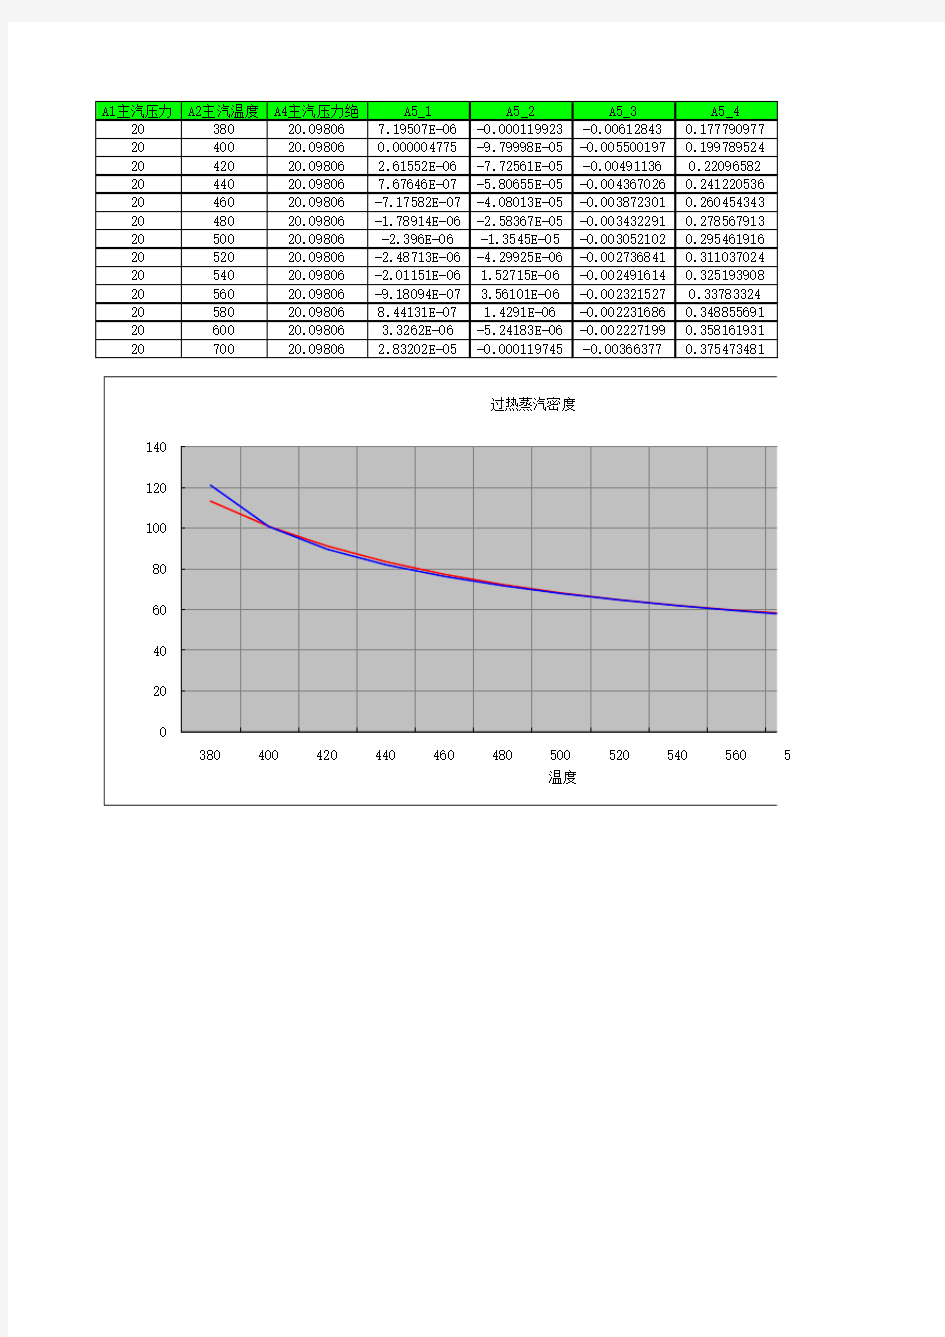 蒸汽密度公式计算与查表对照曲线